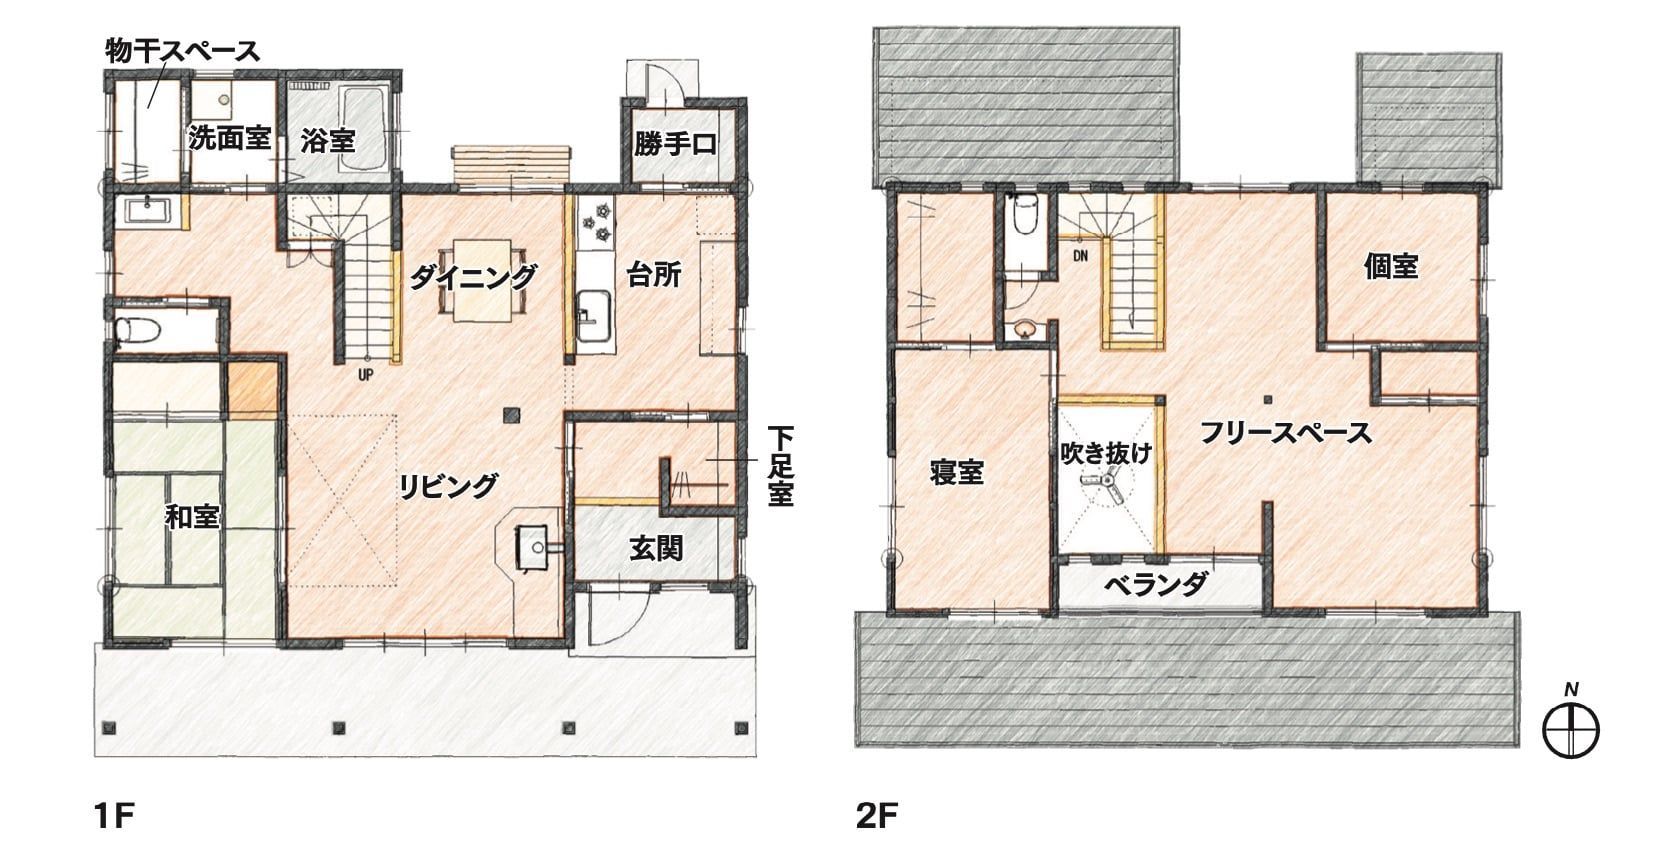 三重県太田市 松浪建設 モデルハウス 平面図